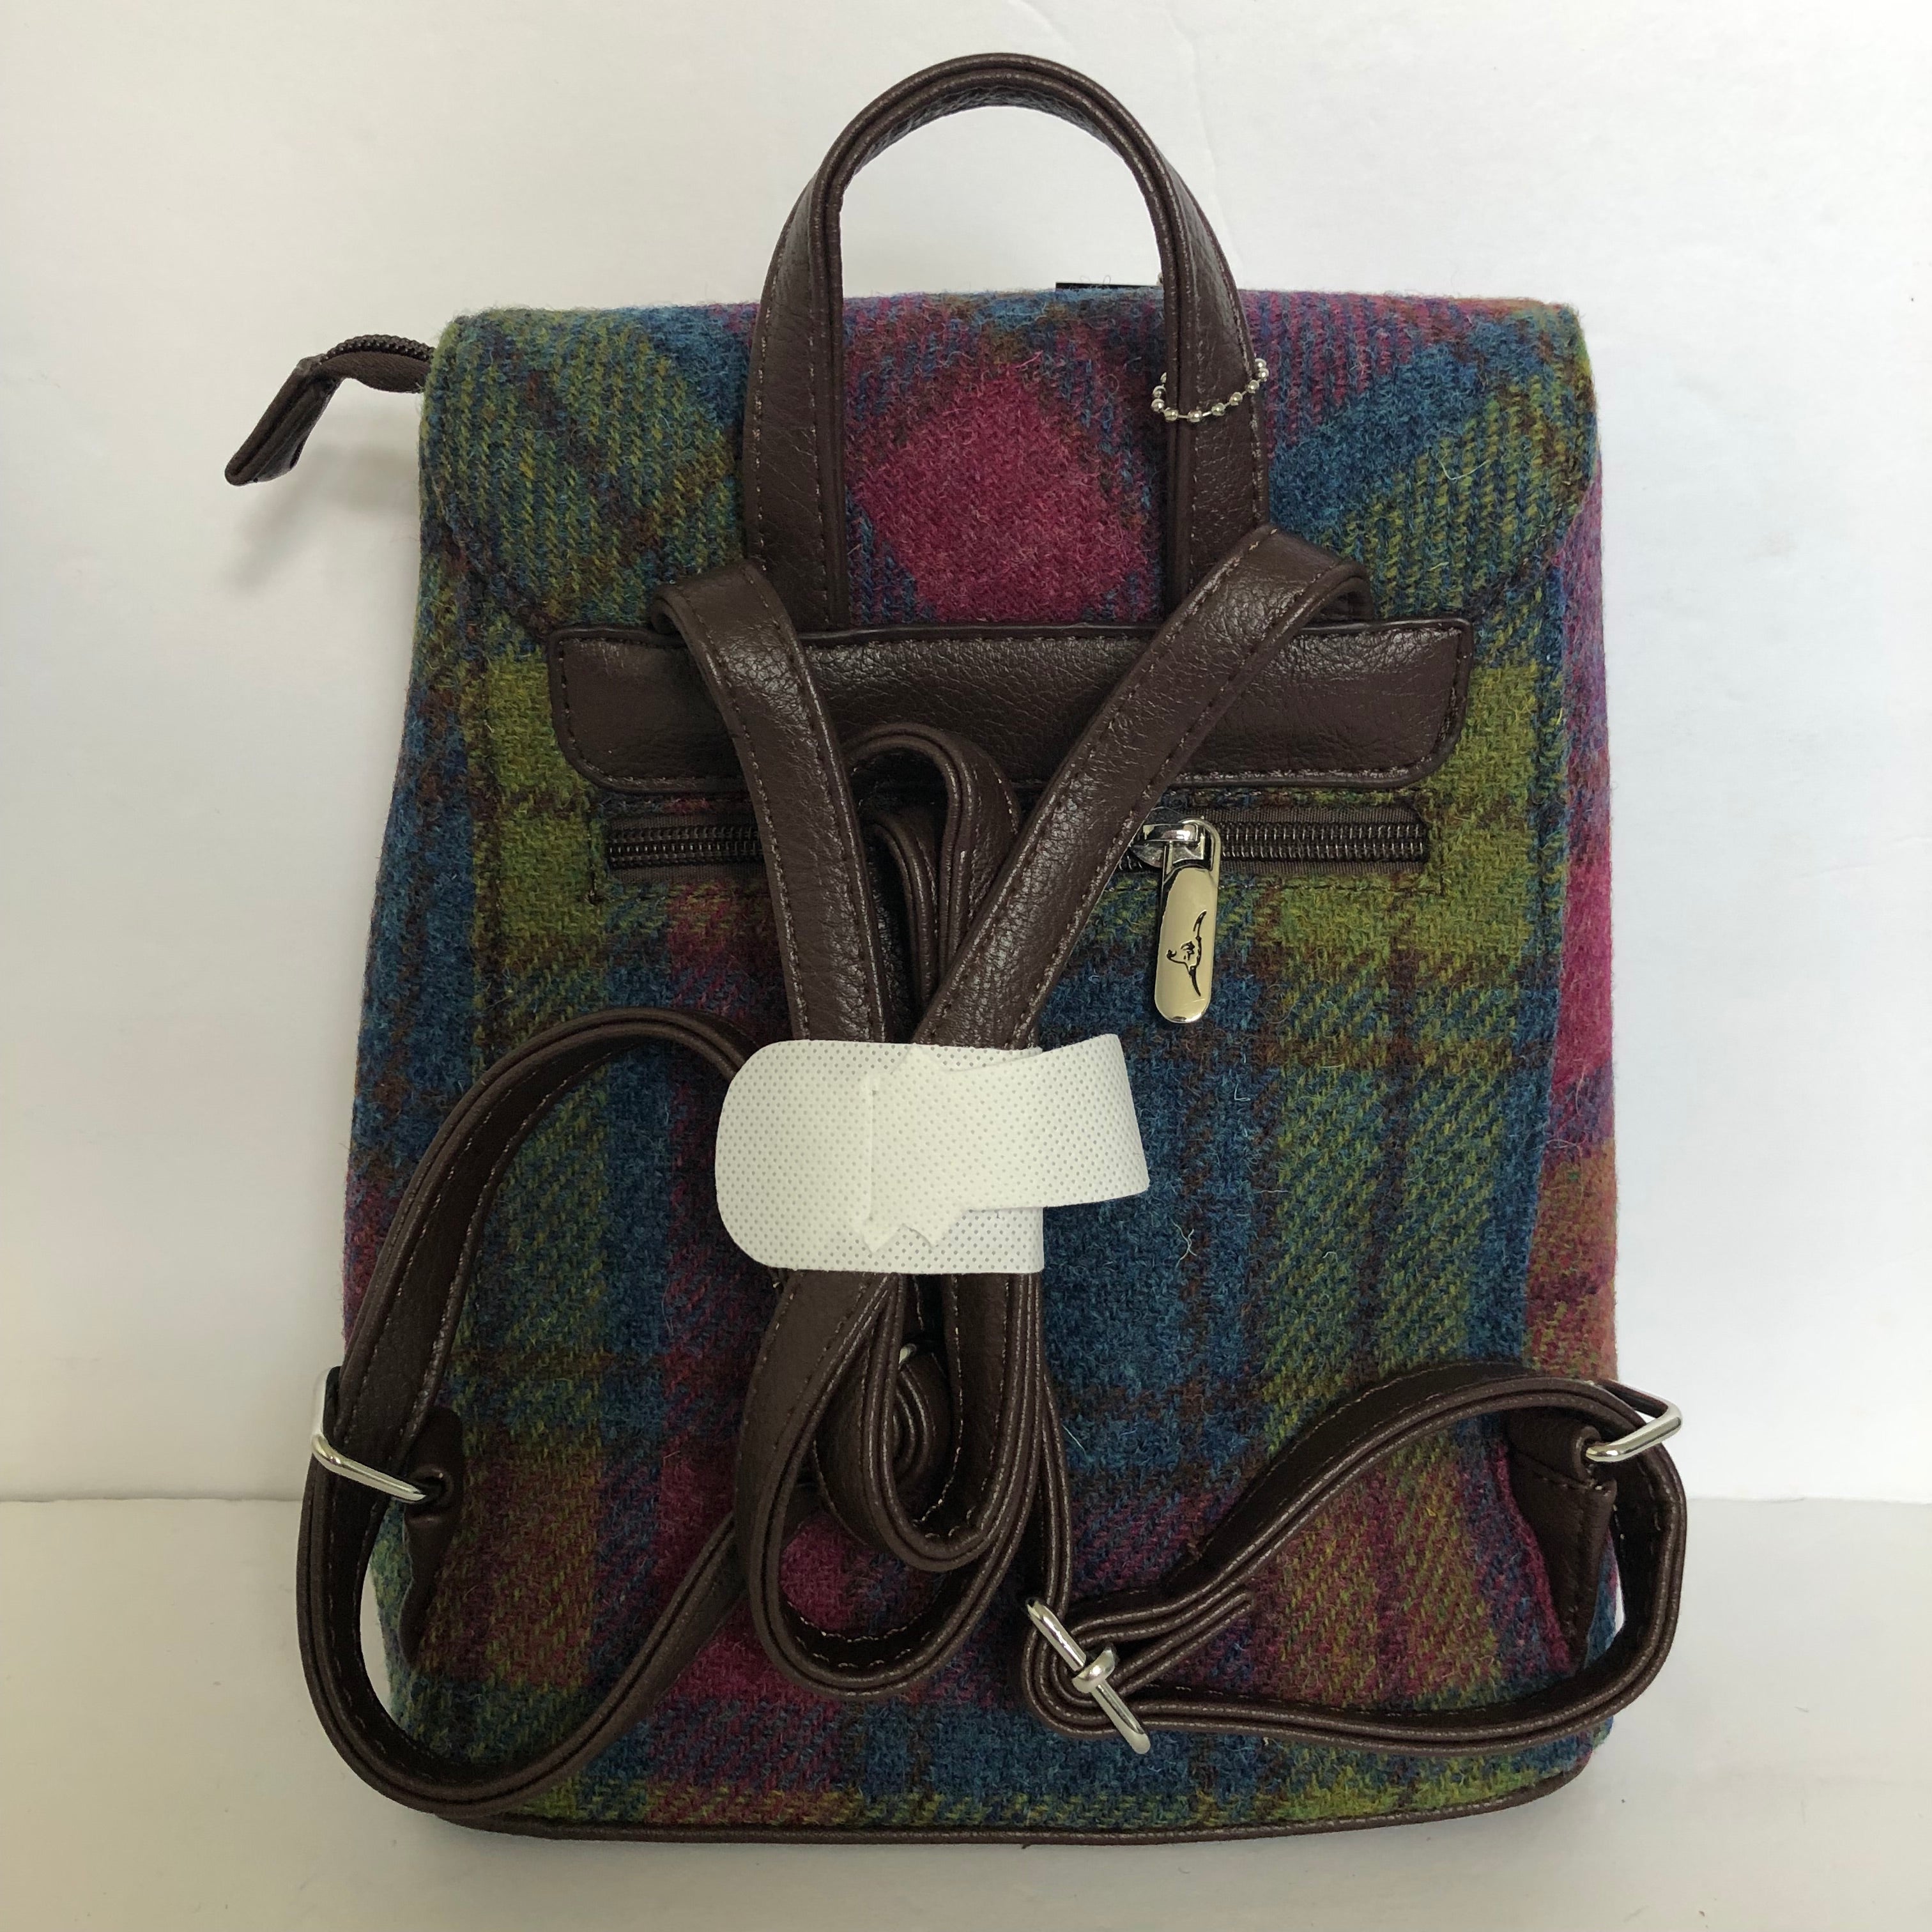 Harris Tweed Plaid Backpack - Multi Color Plaid